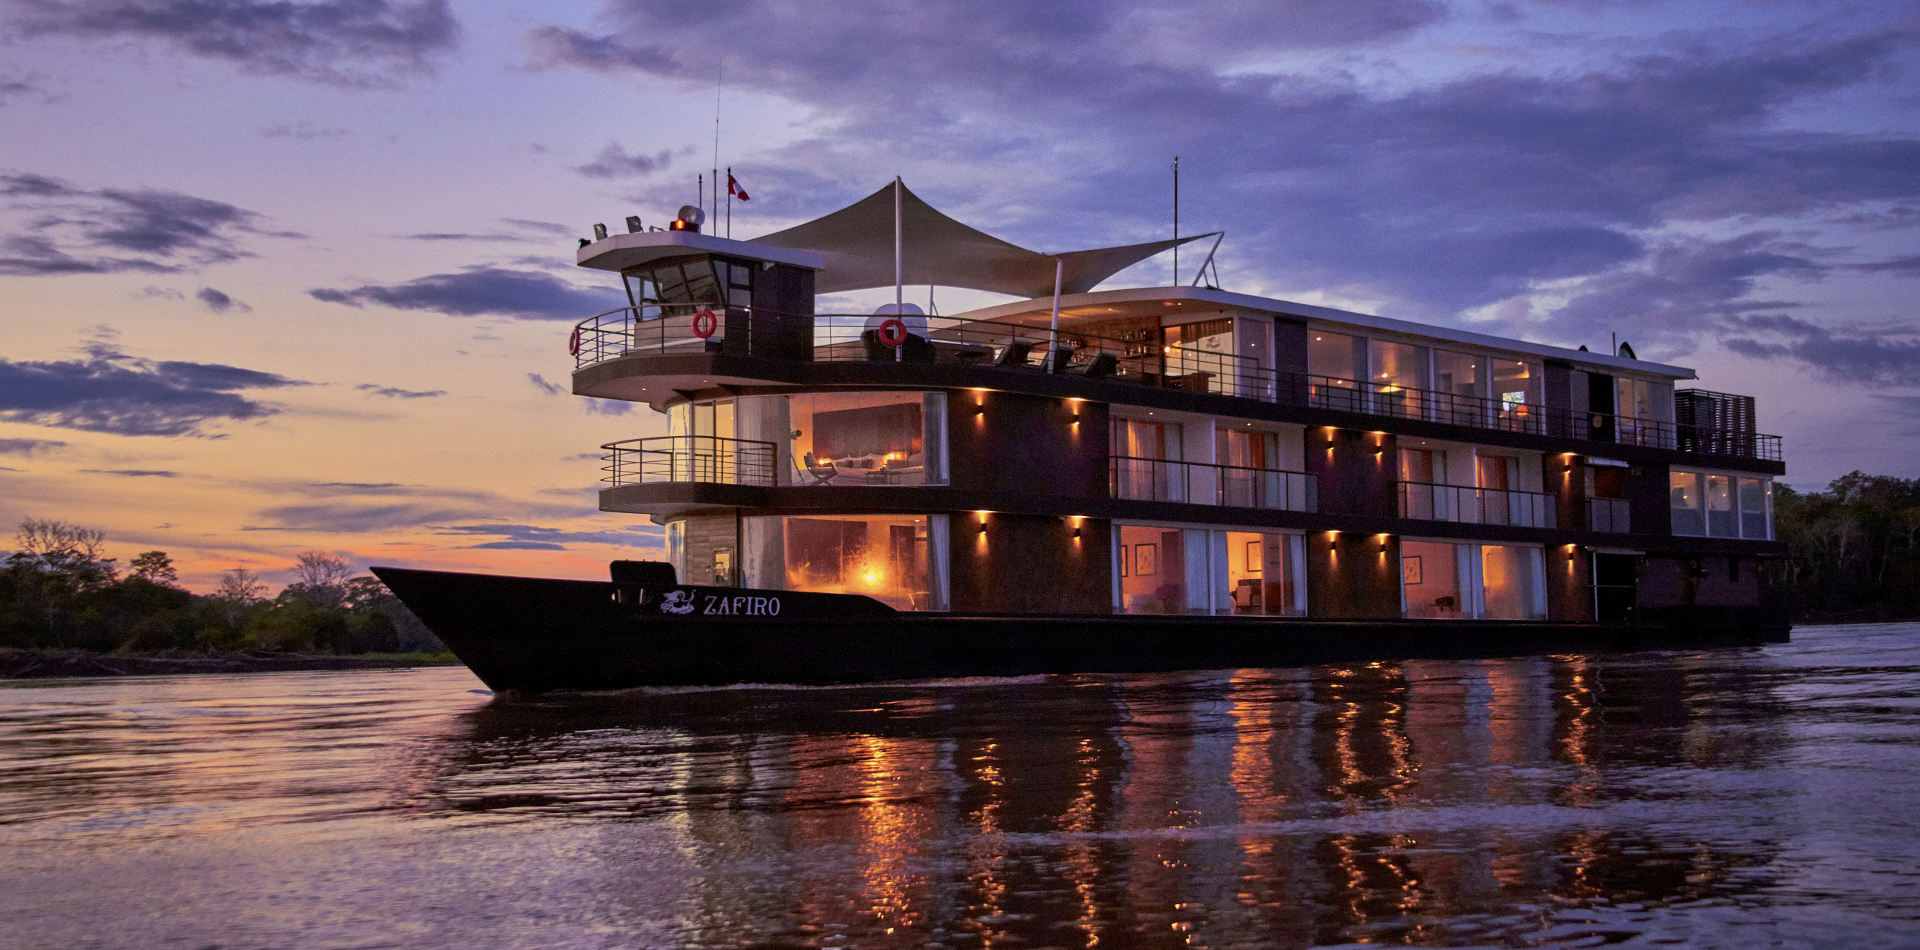 Jungle Experience Zafiro Luxury Cruise, Flusskreuzfahrt Amazonas, Flusskreuzfahrt Jungle Experience